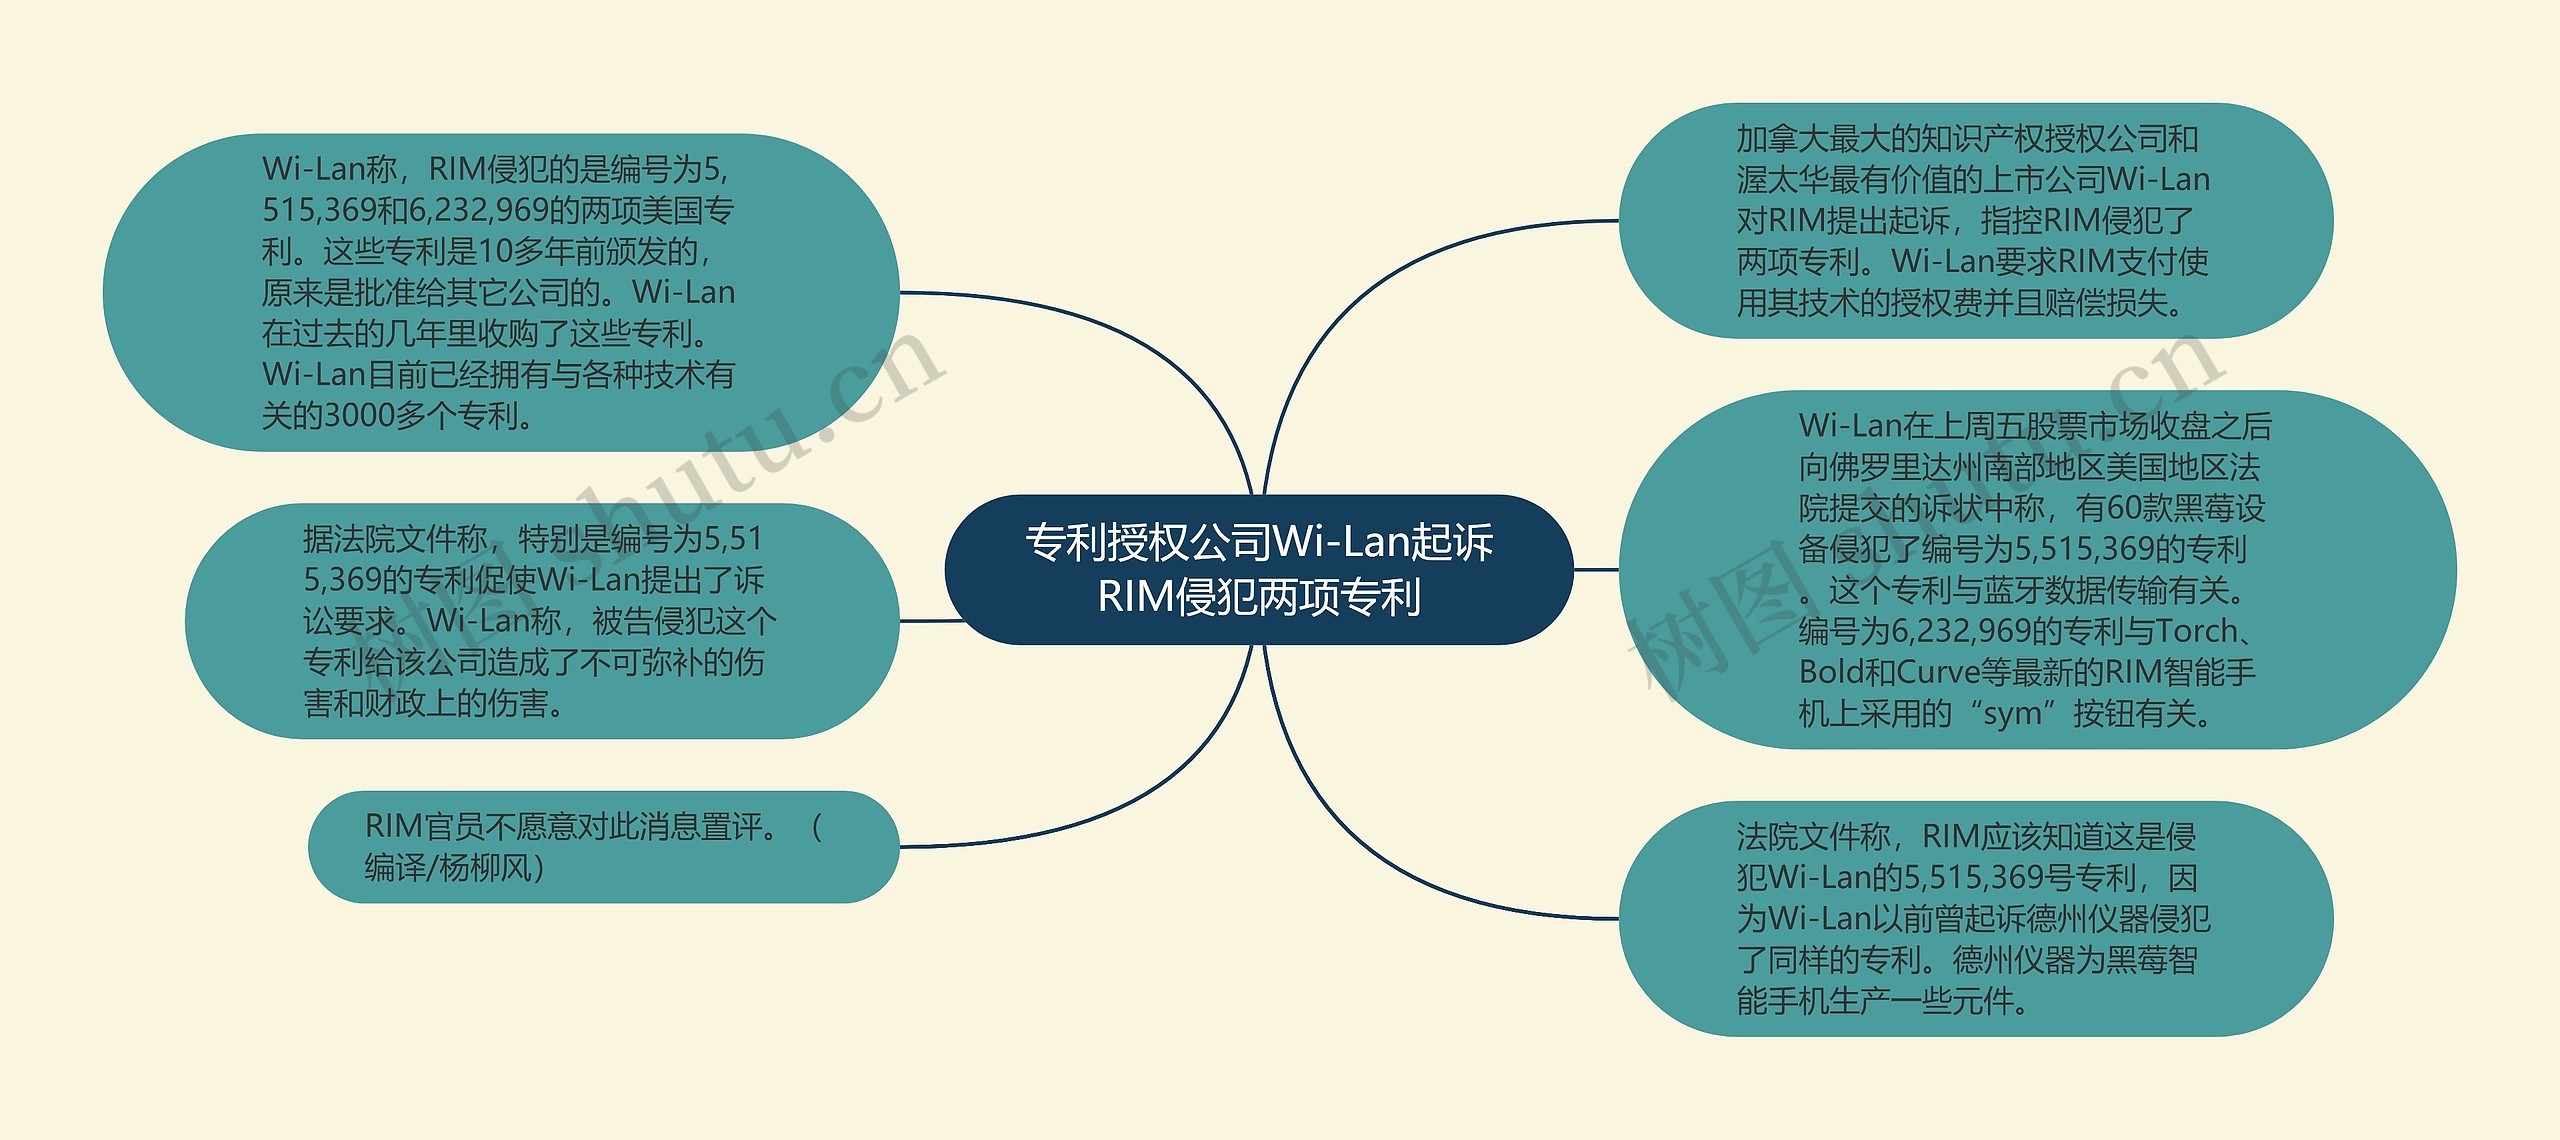 专利授权公司Wi-Lan起诉RIM侵犯两项专利思维导图